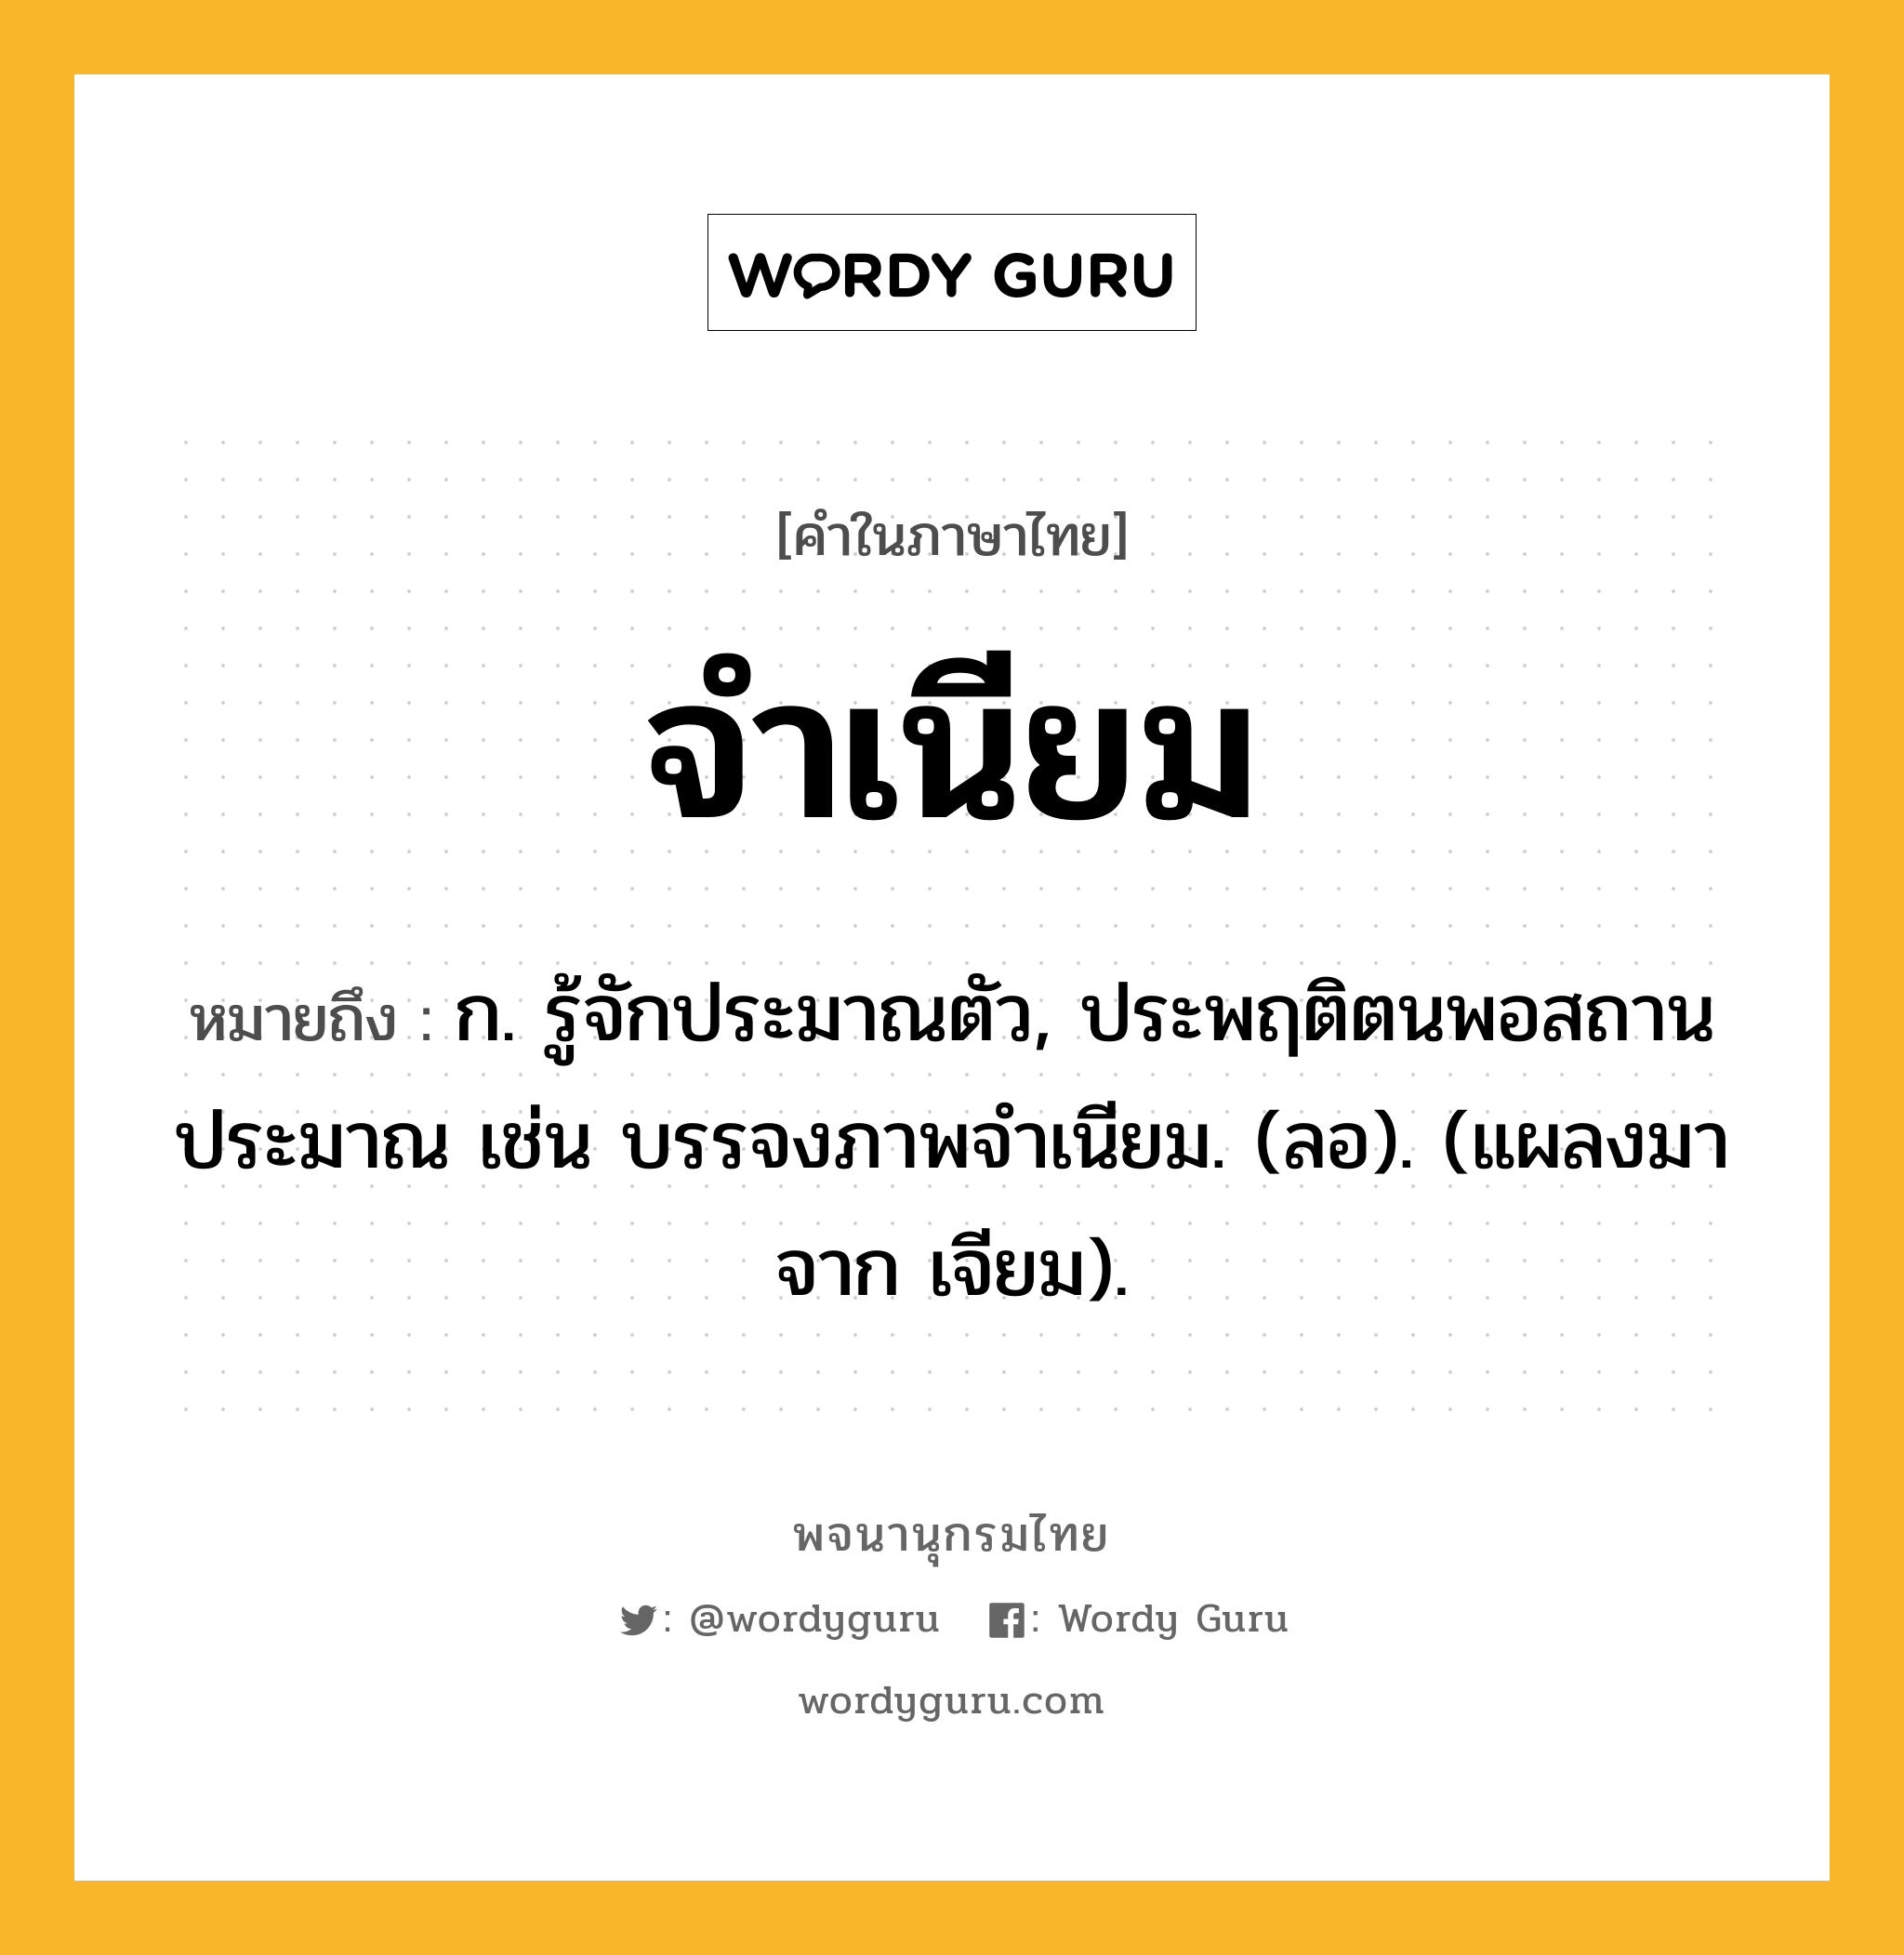 จำเนียม ความหมาย หมายถึงอะไร?, คำในภาษาไทย จำเนียม หมายถึง ก. รู้จักประมาณตัว, ประพฤติตนพอสถานประมาณ เช่น บรรจงภาพจําเนียม. (ลอ). (แผลงมาจาก เจียม).